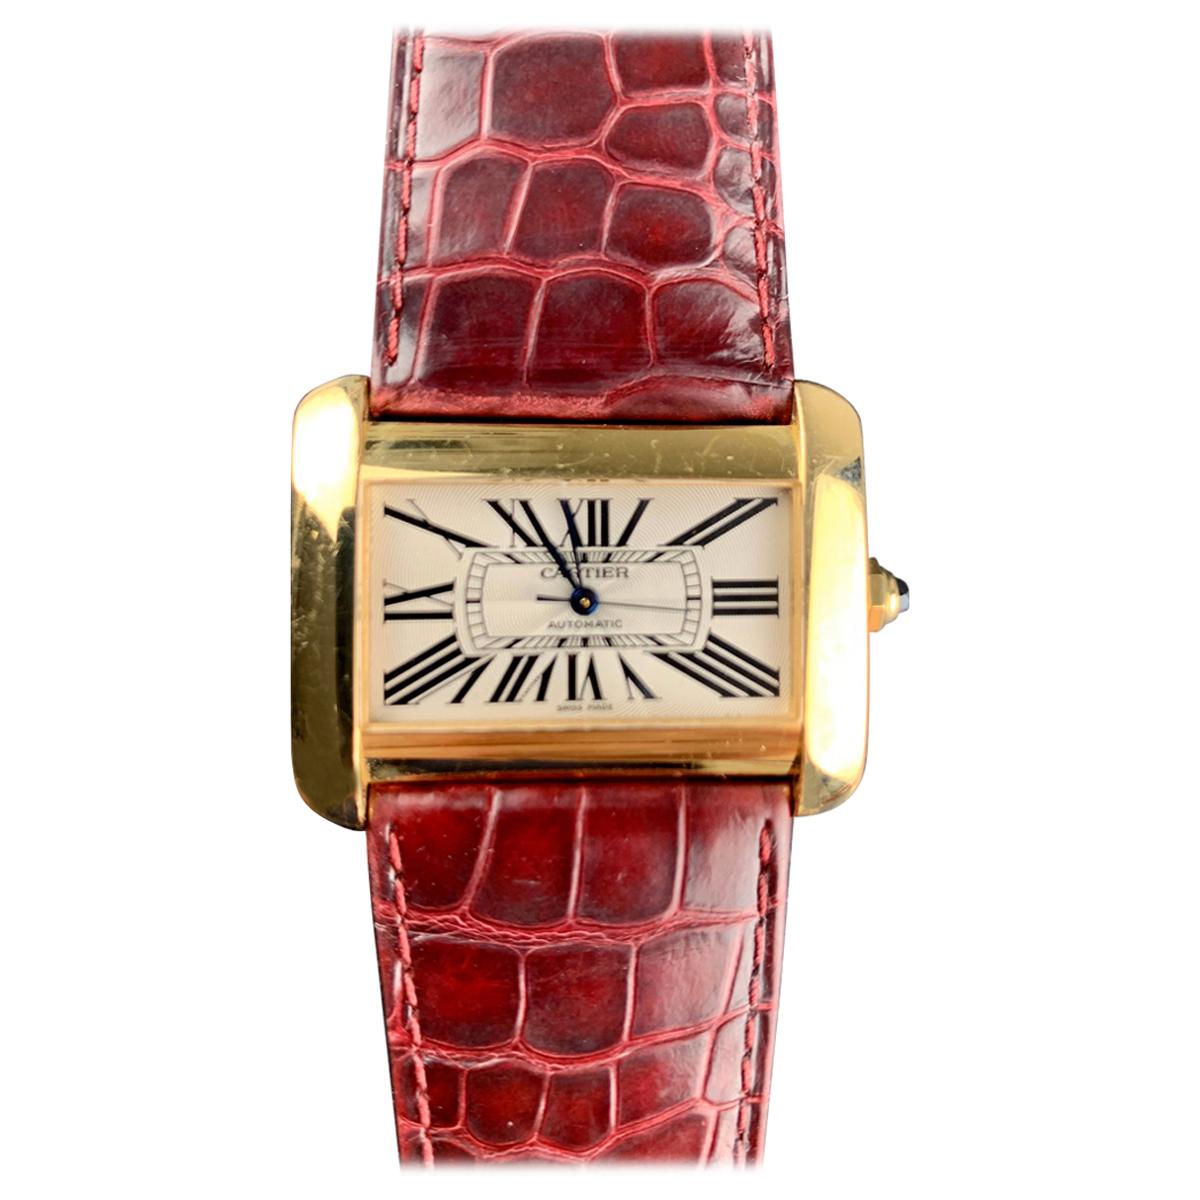 Cartier Tank Divan XL Ref. 2602 18 Carat Yellow Gold Watch